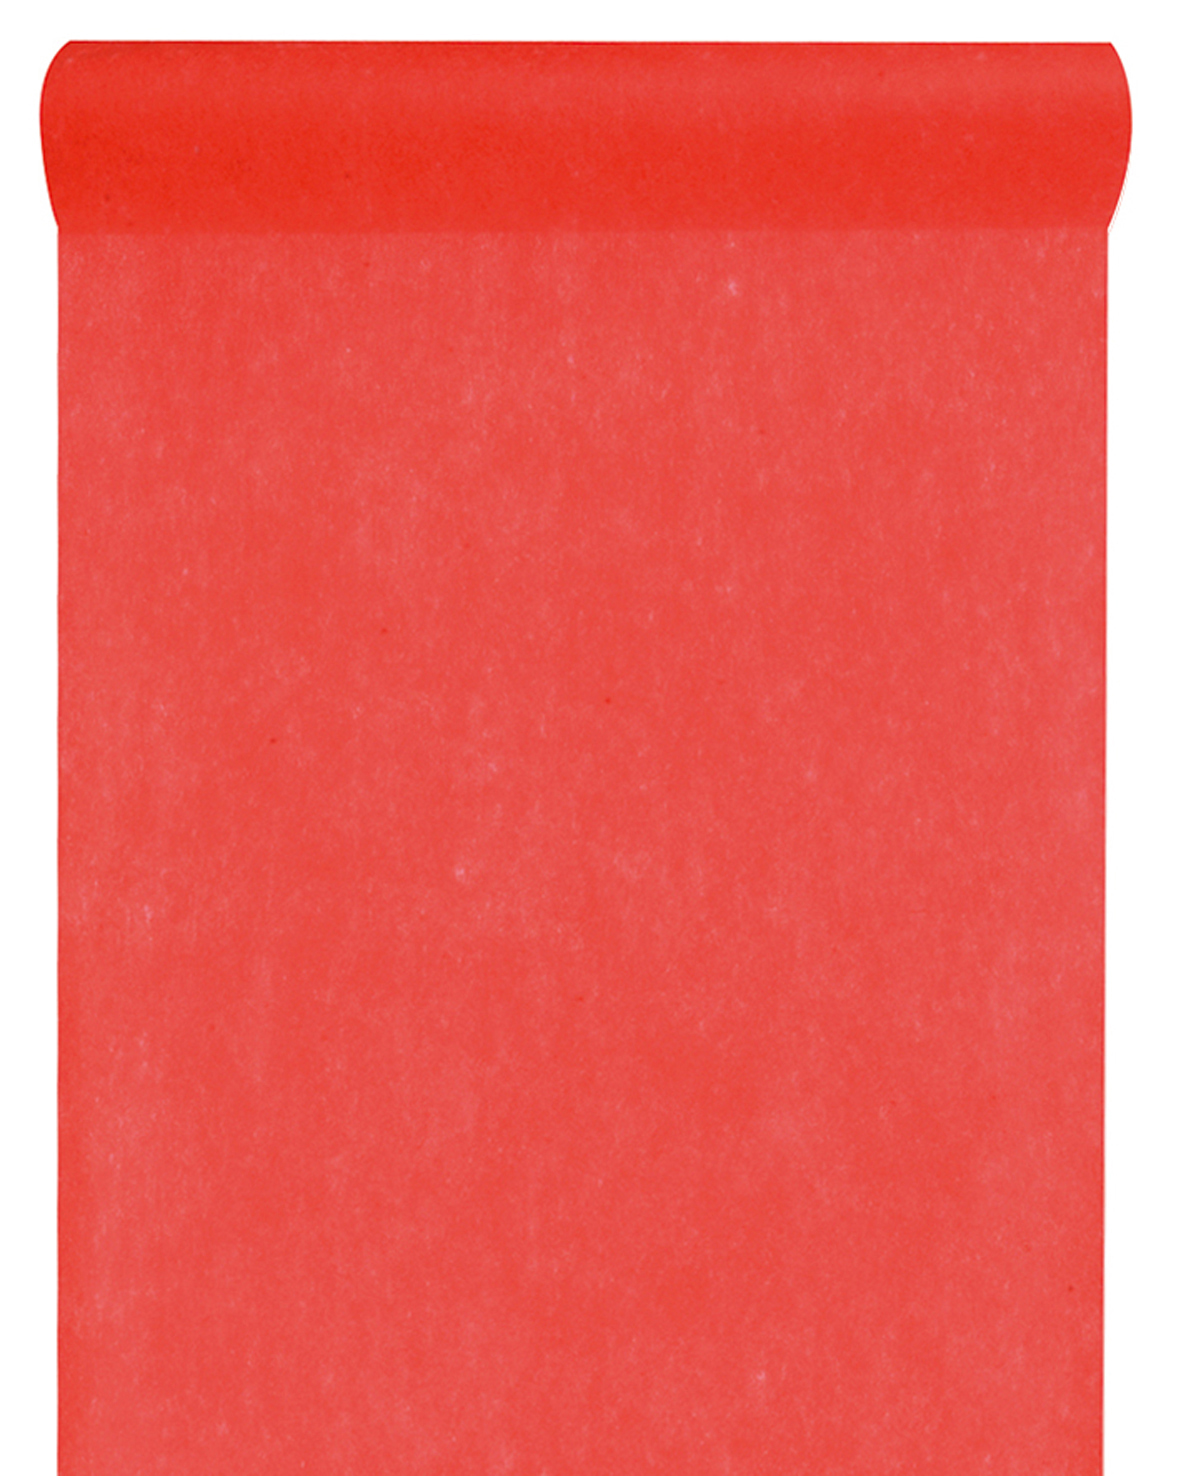 Vlies-Tischläufer BUDGET, rot, 60 cm breit, 10 m Rolle - dekovlies, tischlaeufer, budget